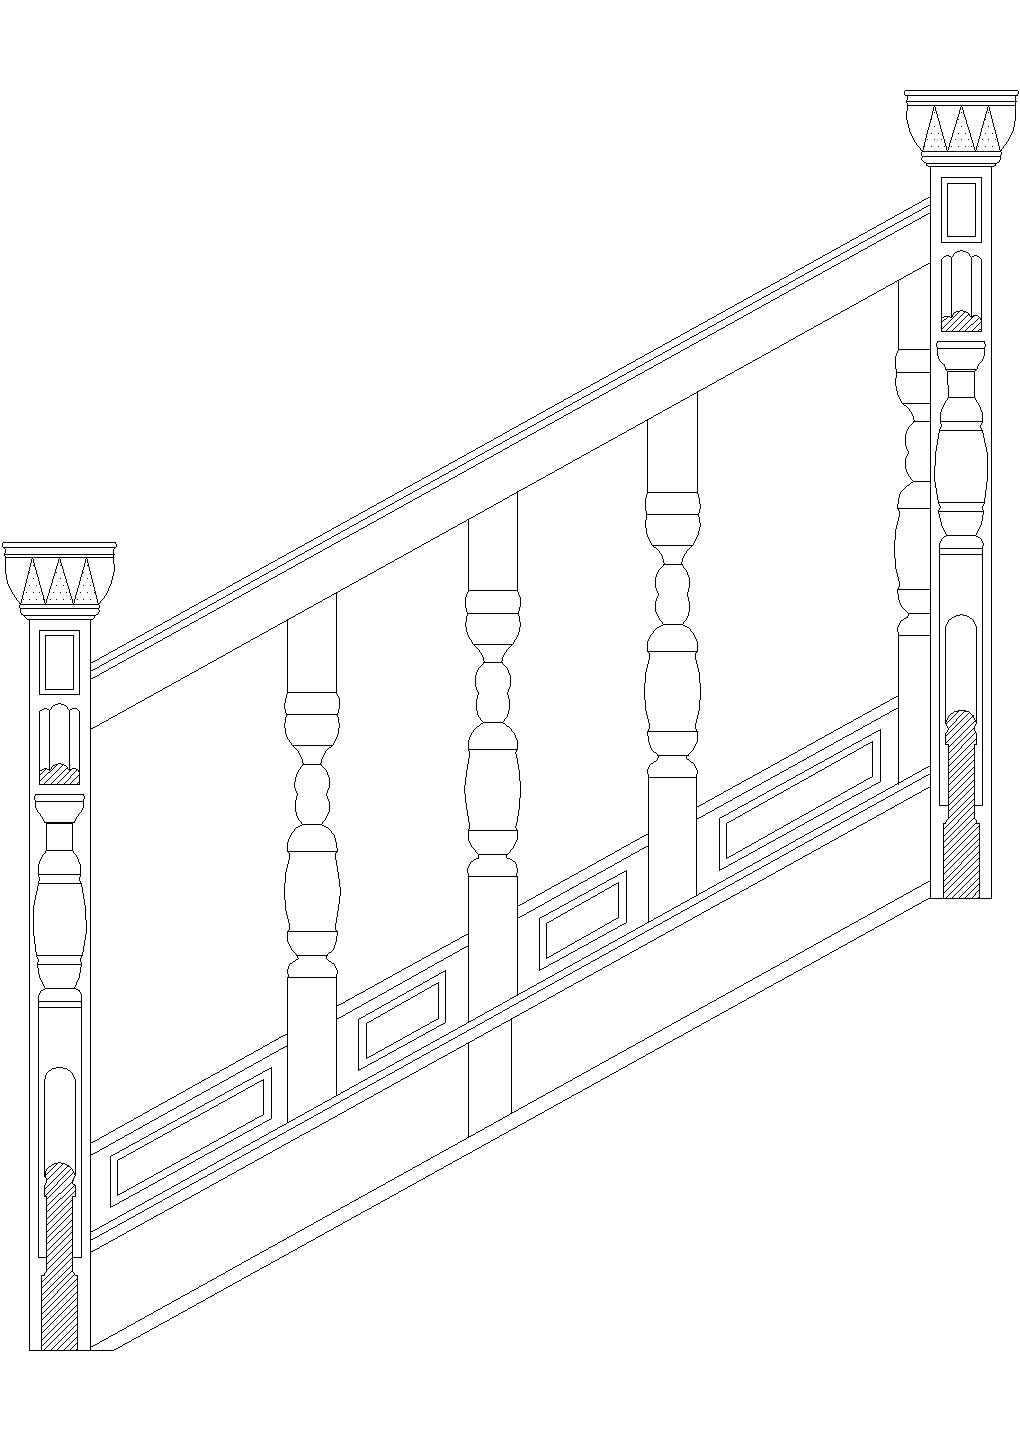 苏州市吴中区某私人园林住宅楼梯扶手设计CAD施工图